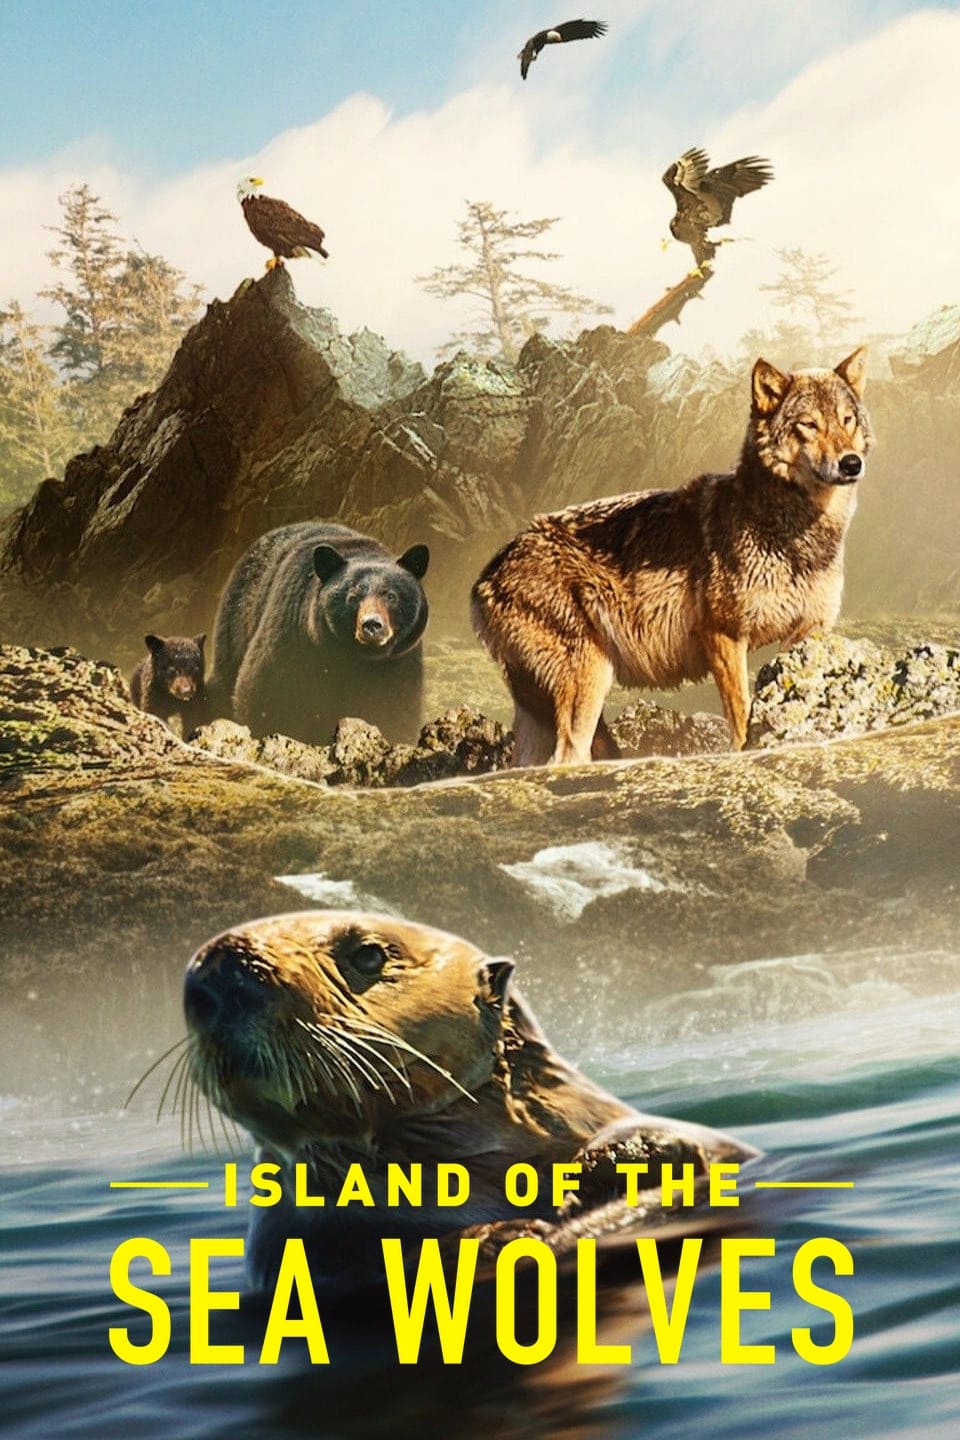 La isla de los lobos costeros